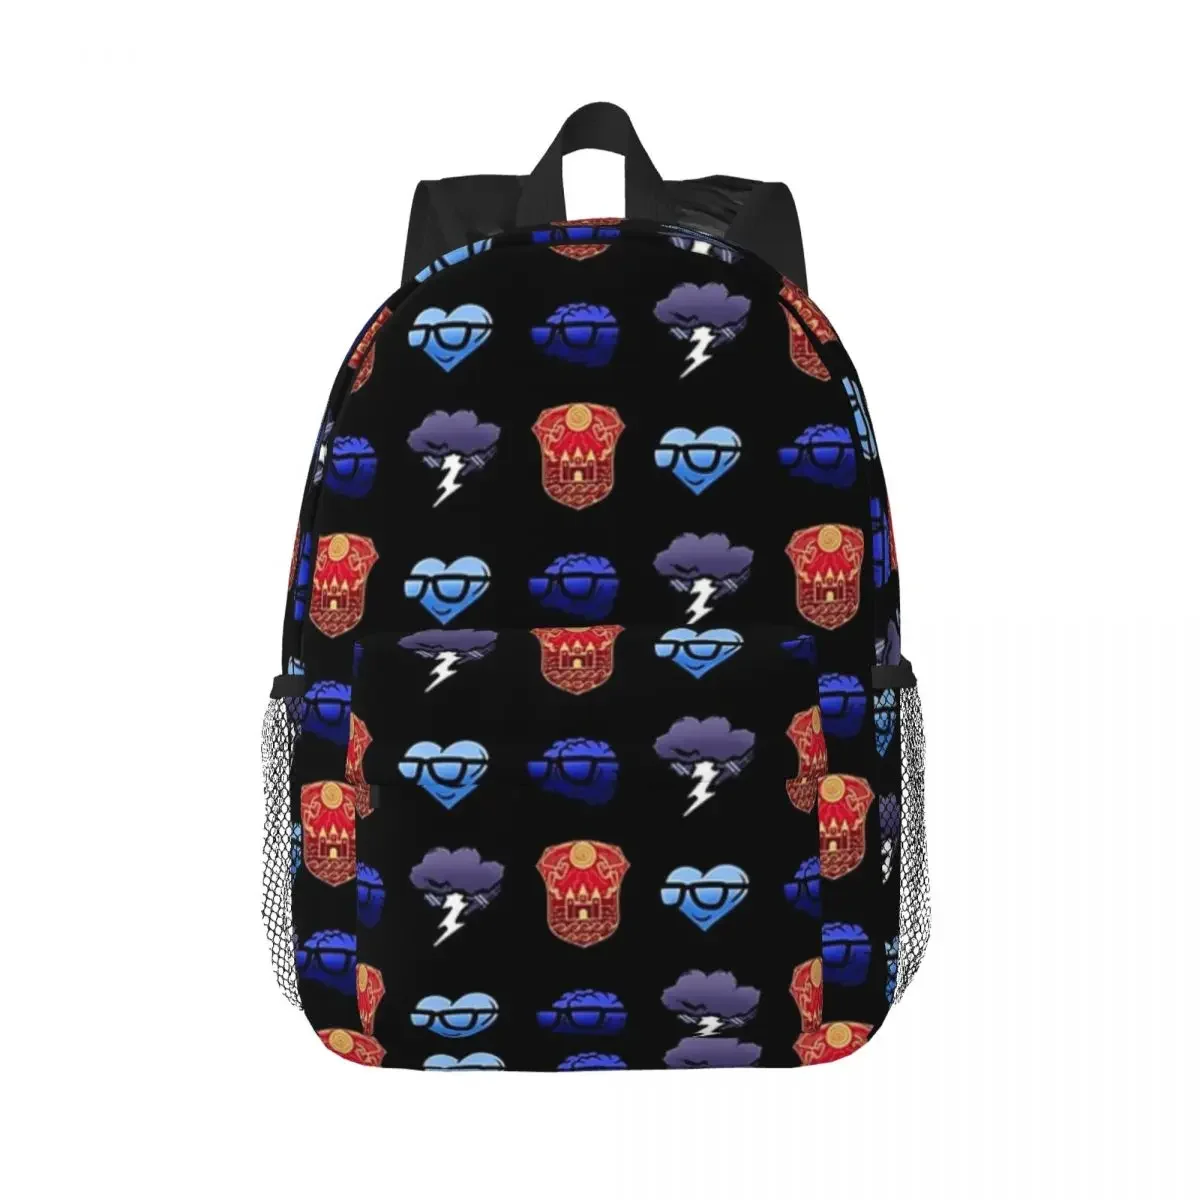 

Galaxy Logos Of Sanders Sides Backpack Teenager Bookbag Cartoon Students School Bags Laptop Rucksack Shoulder Bag Large Capacity